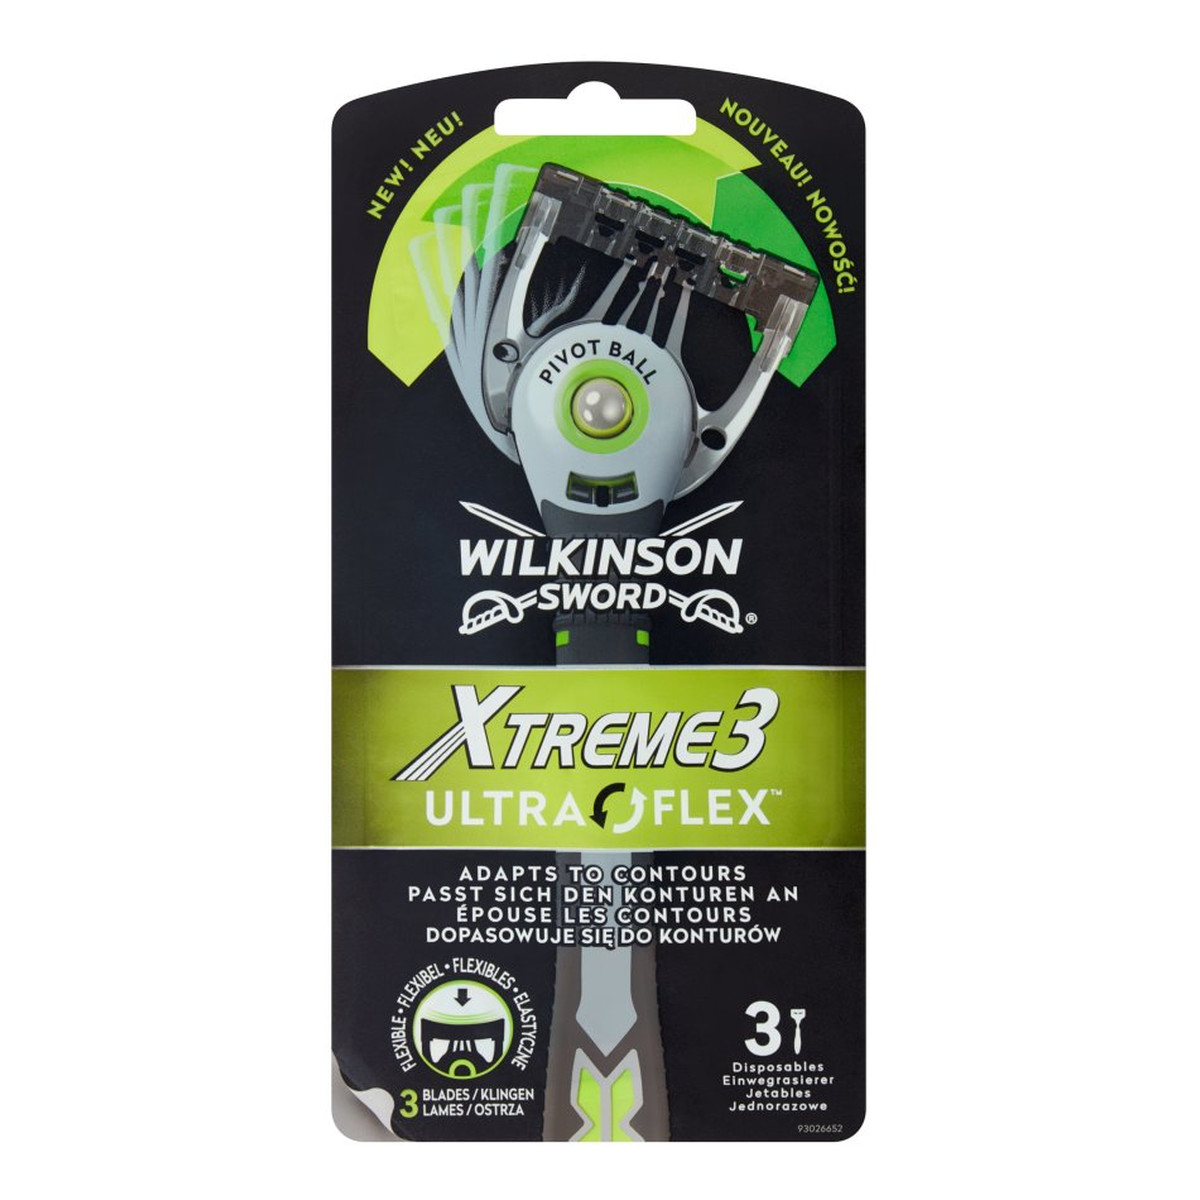 Wilkinson Xtreme3 Ultra Flex Jednorazowe maszynki do golenia 3 sztuki